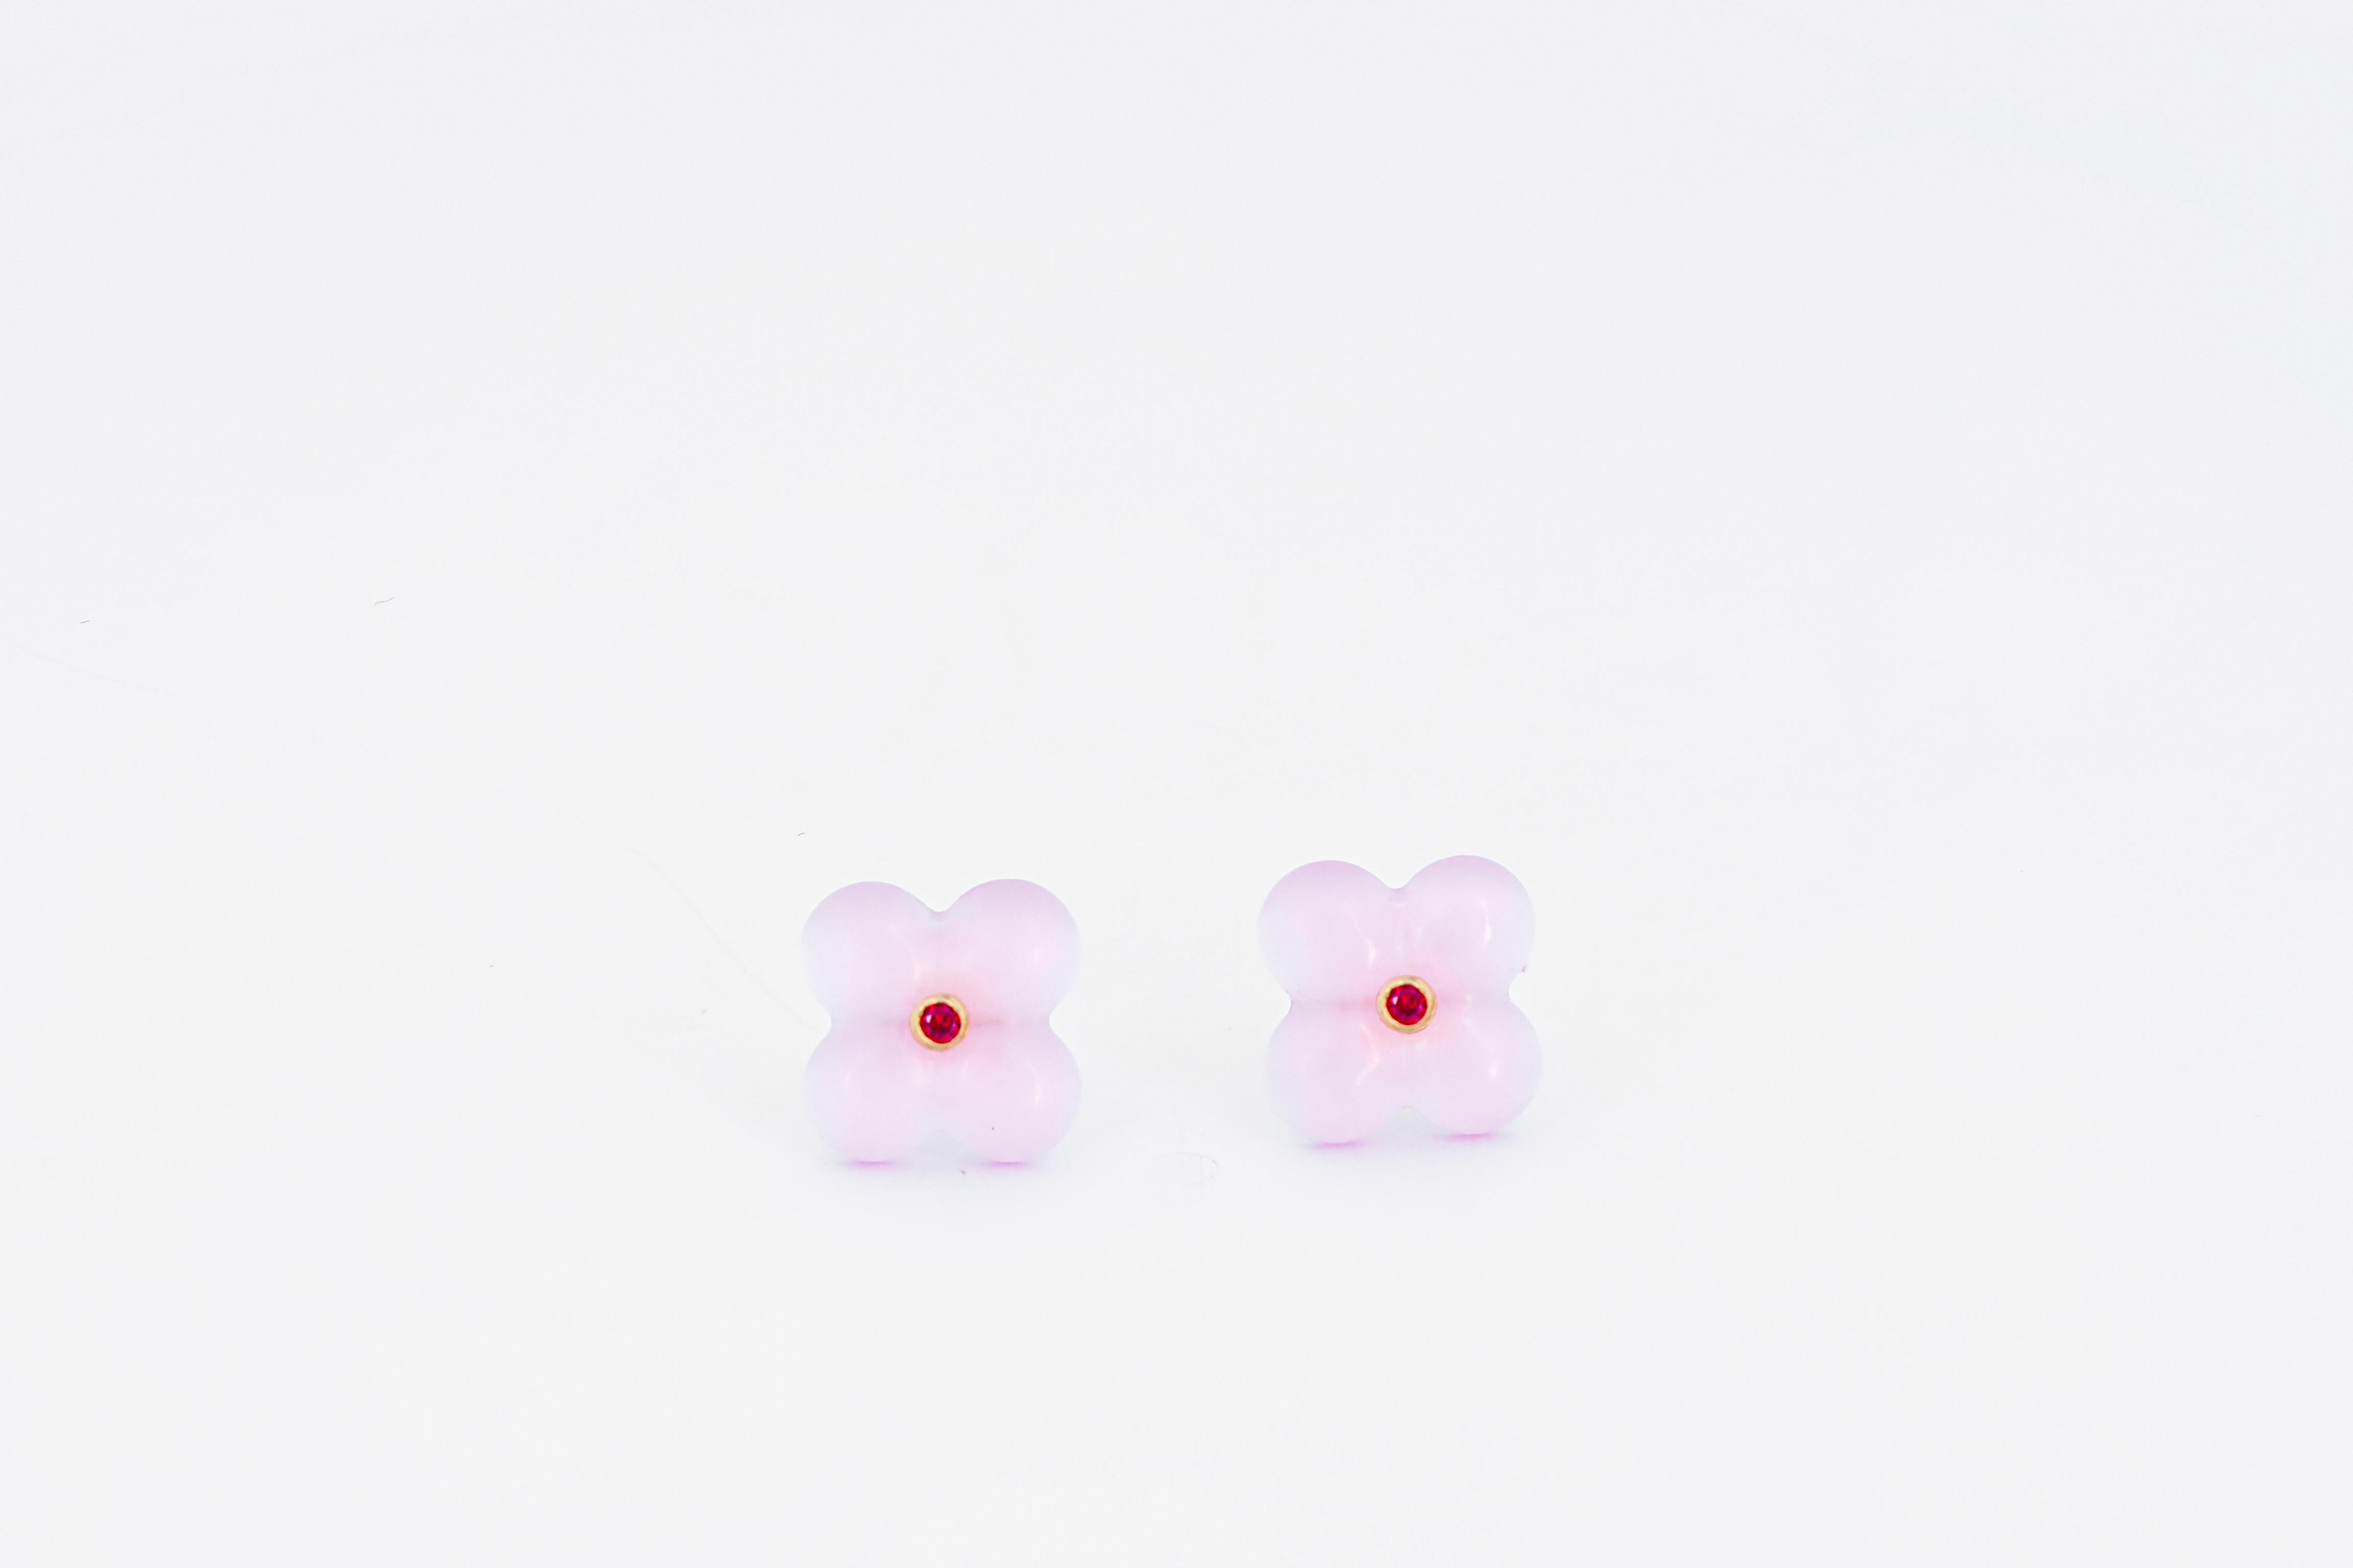 14k gold carved  pink quartz flower earrings studs. 4 petal flower earrings.  Pink quartz 14k gold earrings. Flower gold earrings. Pink flower wedding earrings.

Metal: 14k gold 
Weight: 1.2 gr.
Earrings face: 12 mm.

Gemstones:
2 red color lab